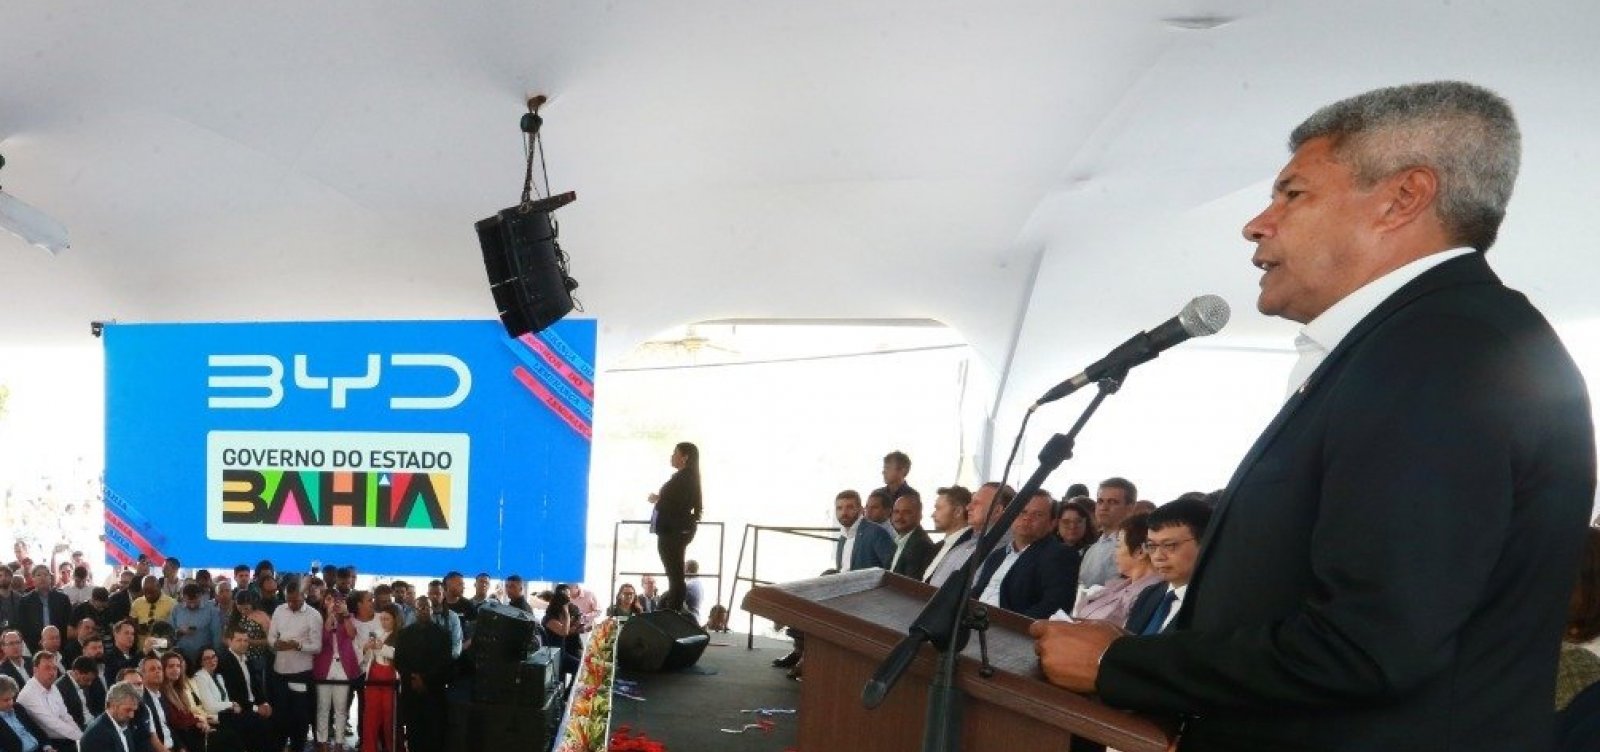 Jerônimo anuncia isenção de IPVA para carros elétricos de até R$ 300 mil produzidos pela BYD na Bahia 